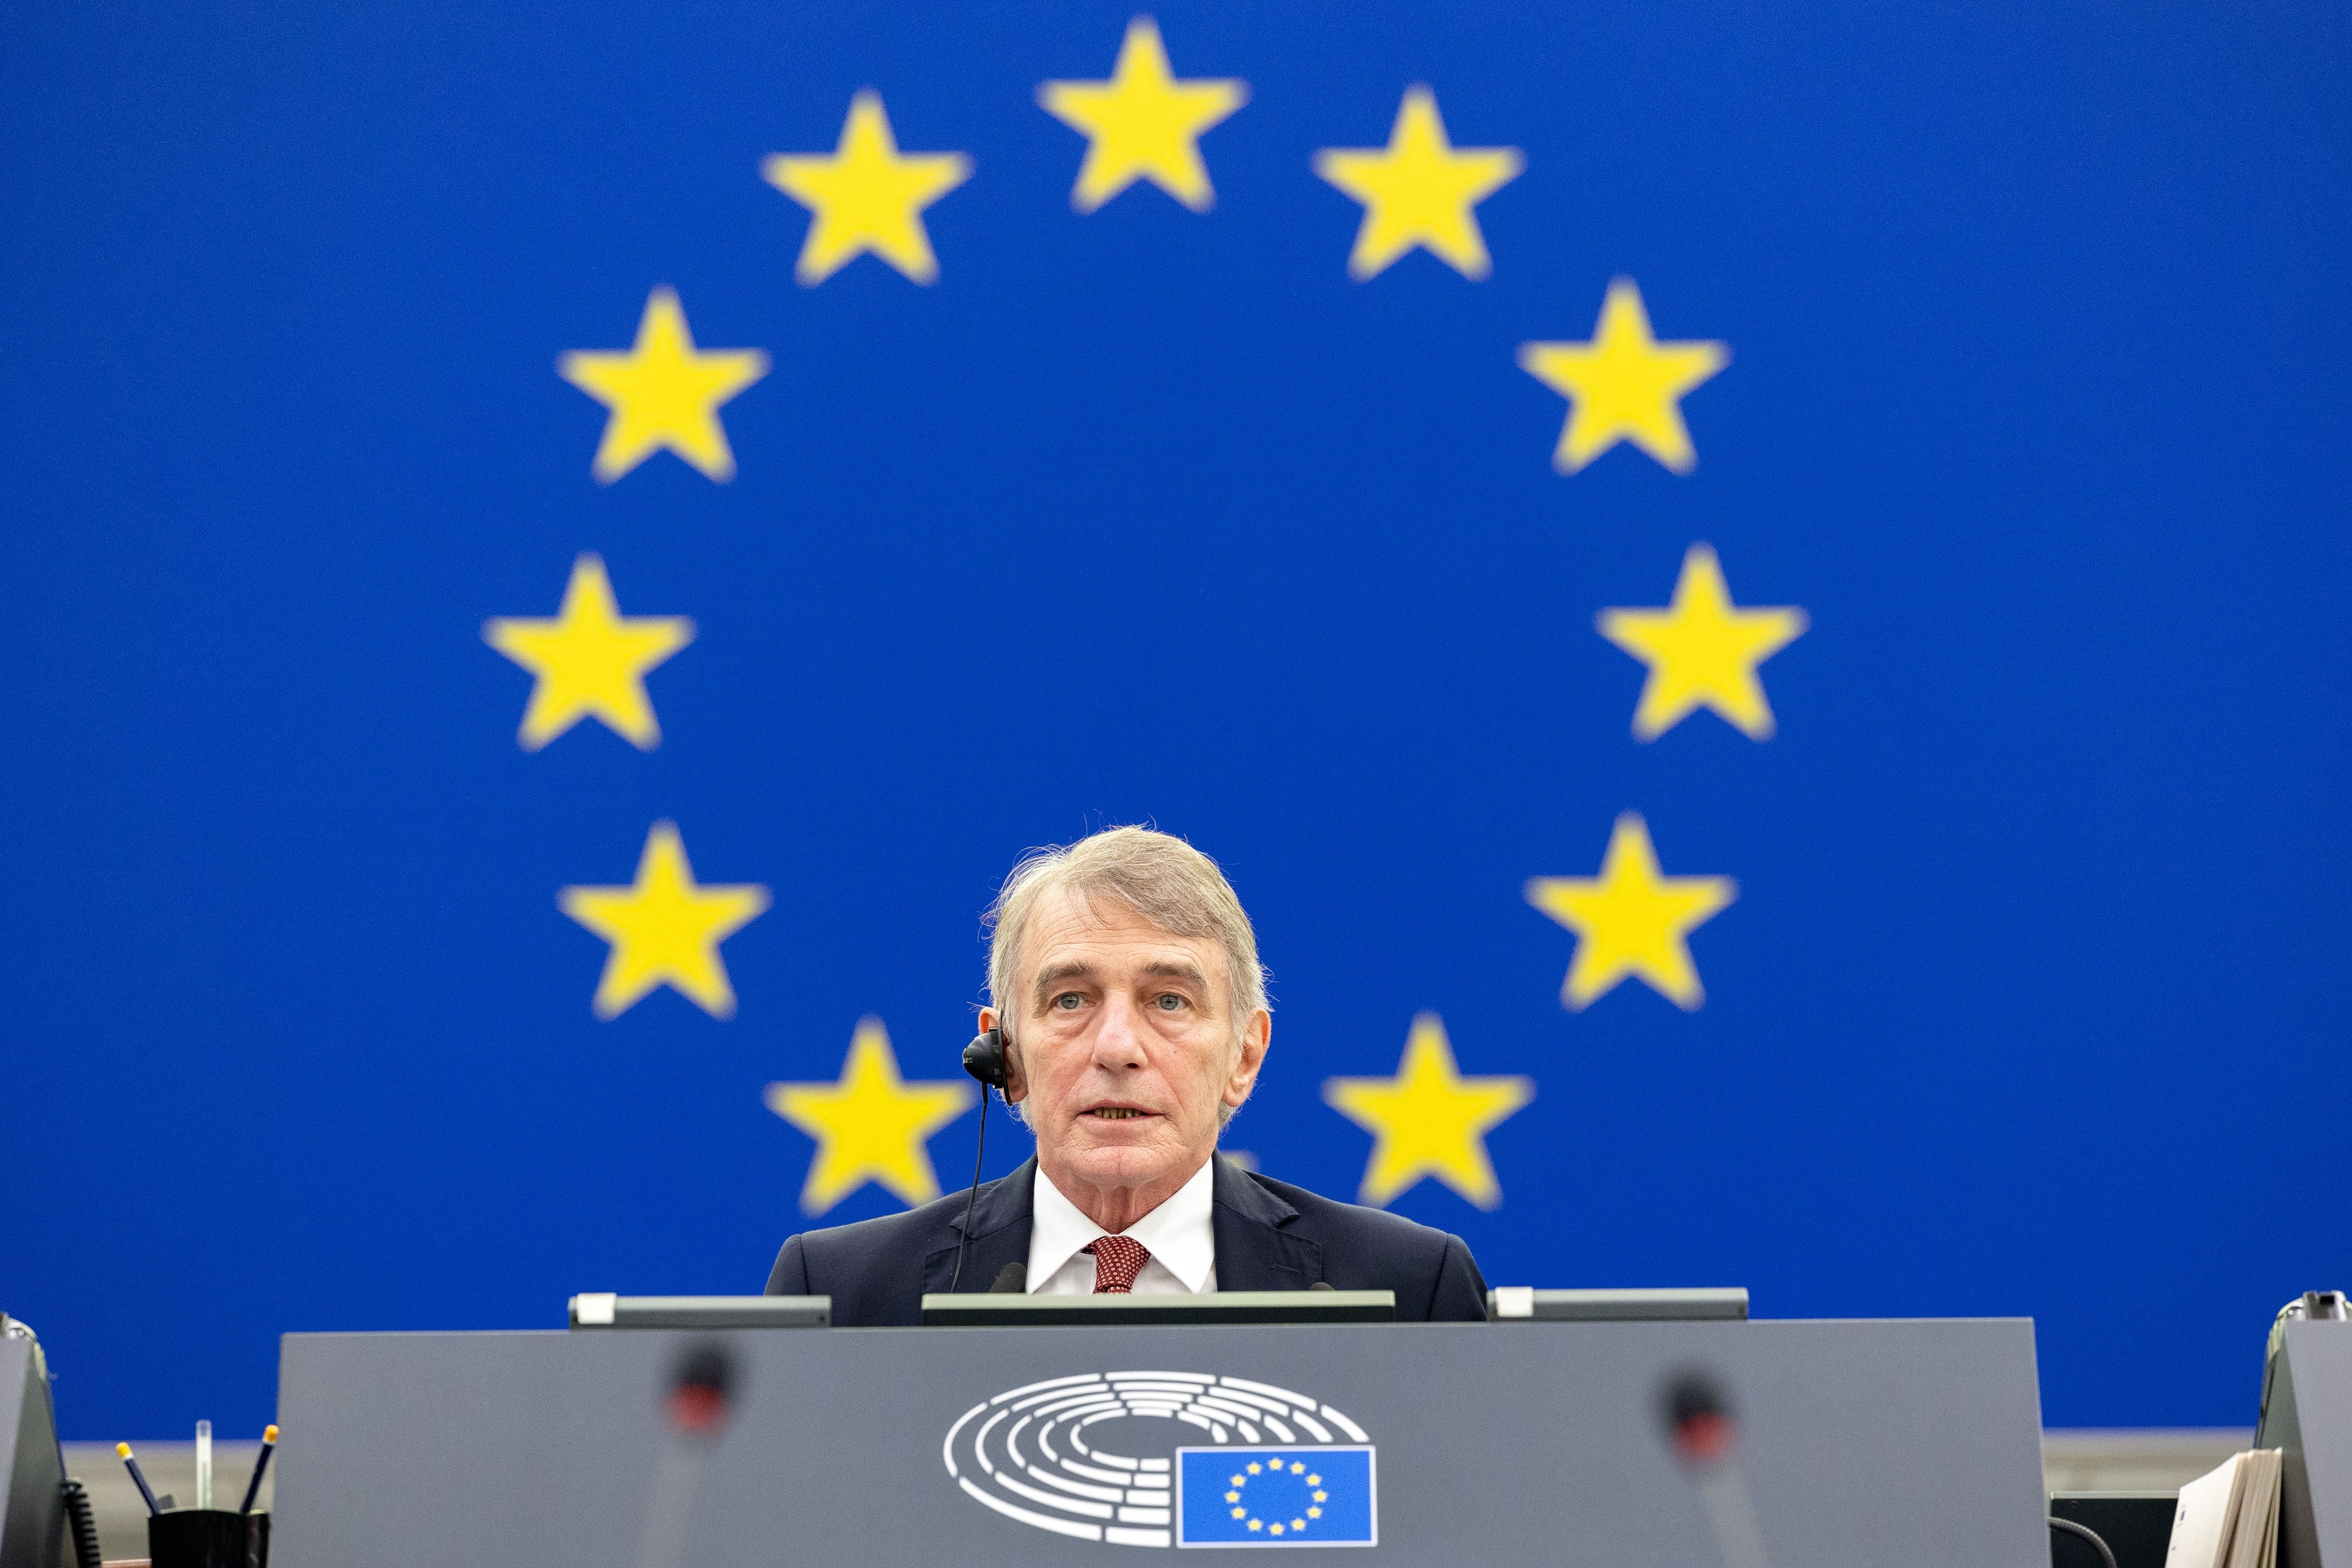 El presidente del Parlamento Europeo ingresa en el hospital por una “complicación grave” en su estado de salud